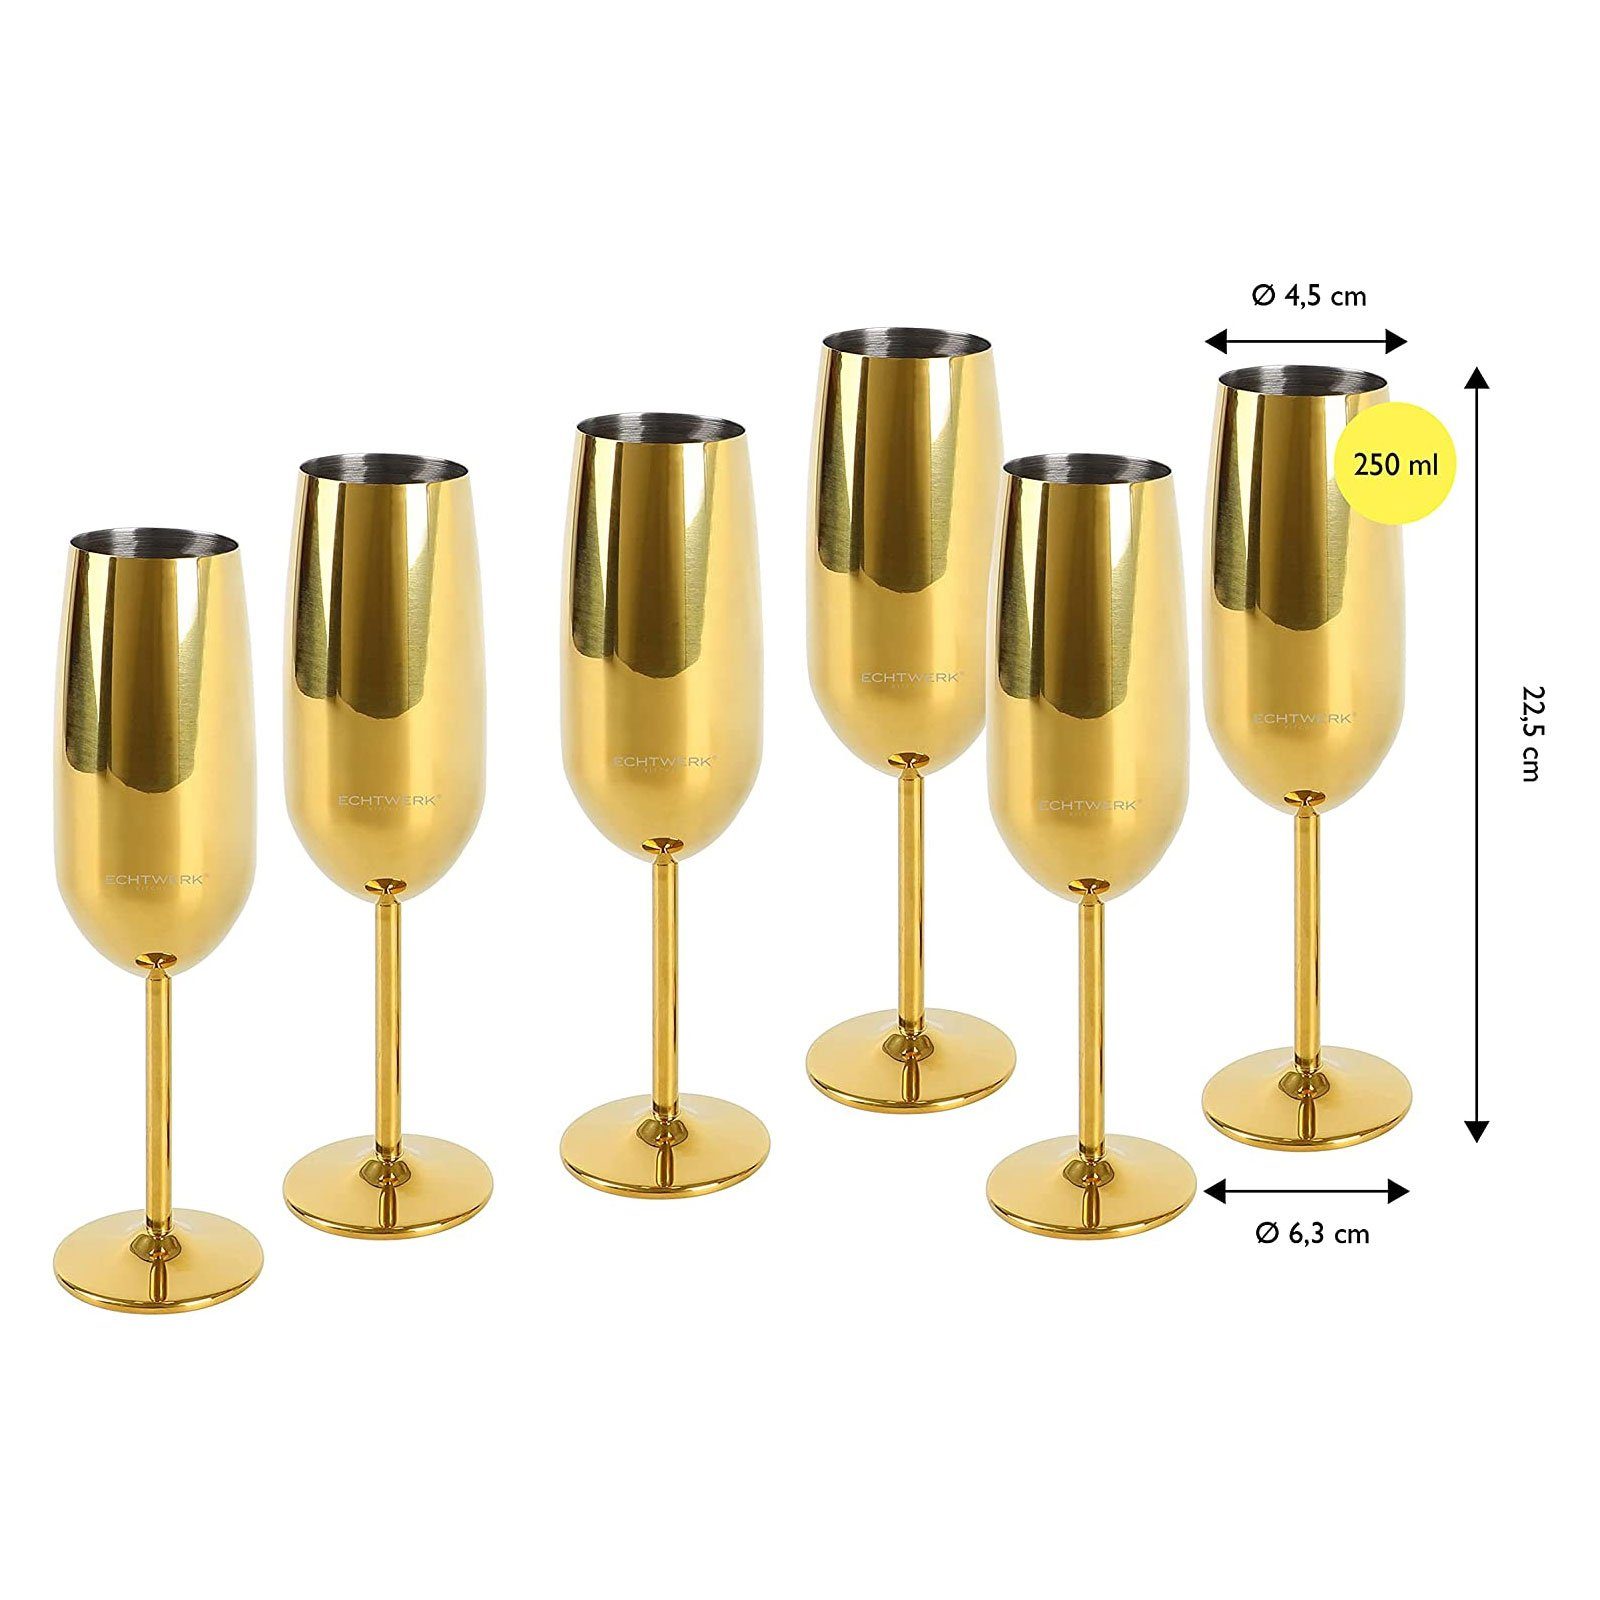 ECHTWERK Glas Edelstahl Sekt-/Champagnerkelch, Gold